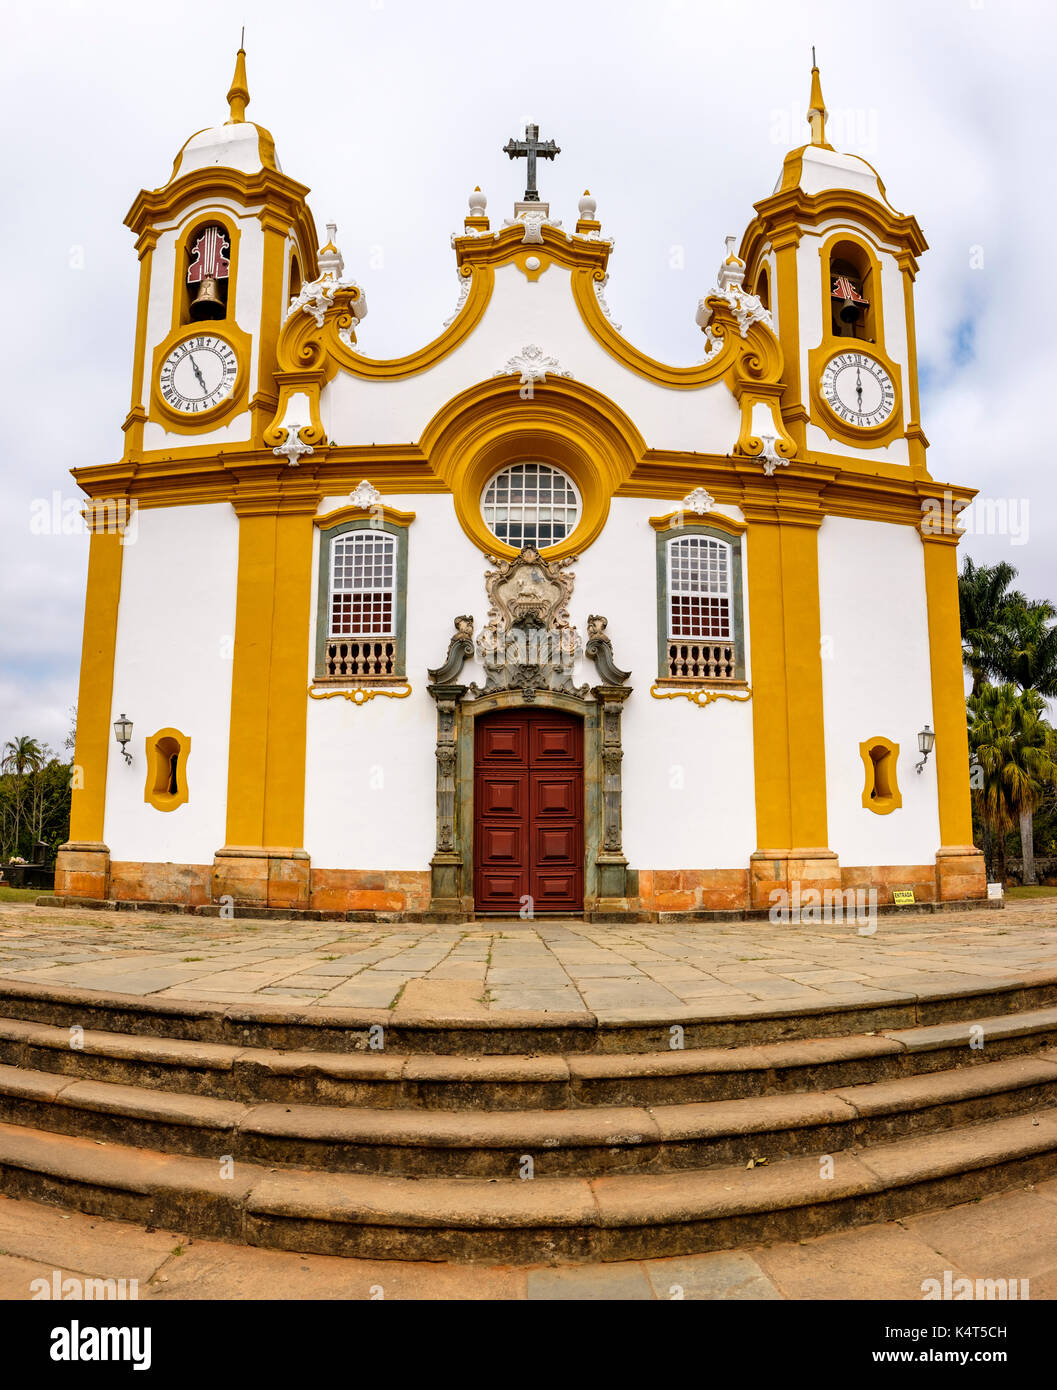 Barocke Architektur, Matriz de Santo Antonio Kirche, der ältesten und größten katholischen Tempel von Tiradentes, Minas Gerais, Brasilien. Stockfoto